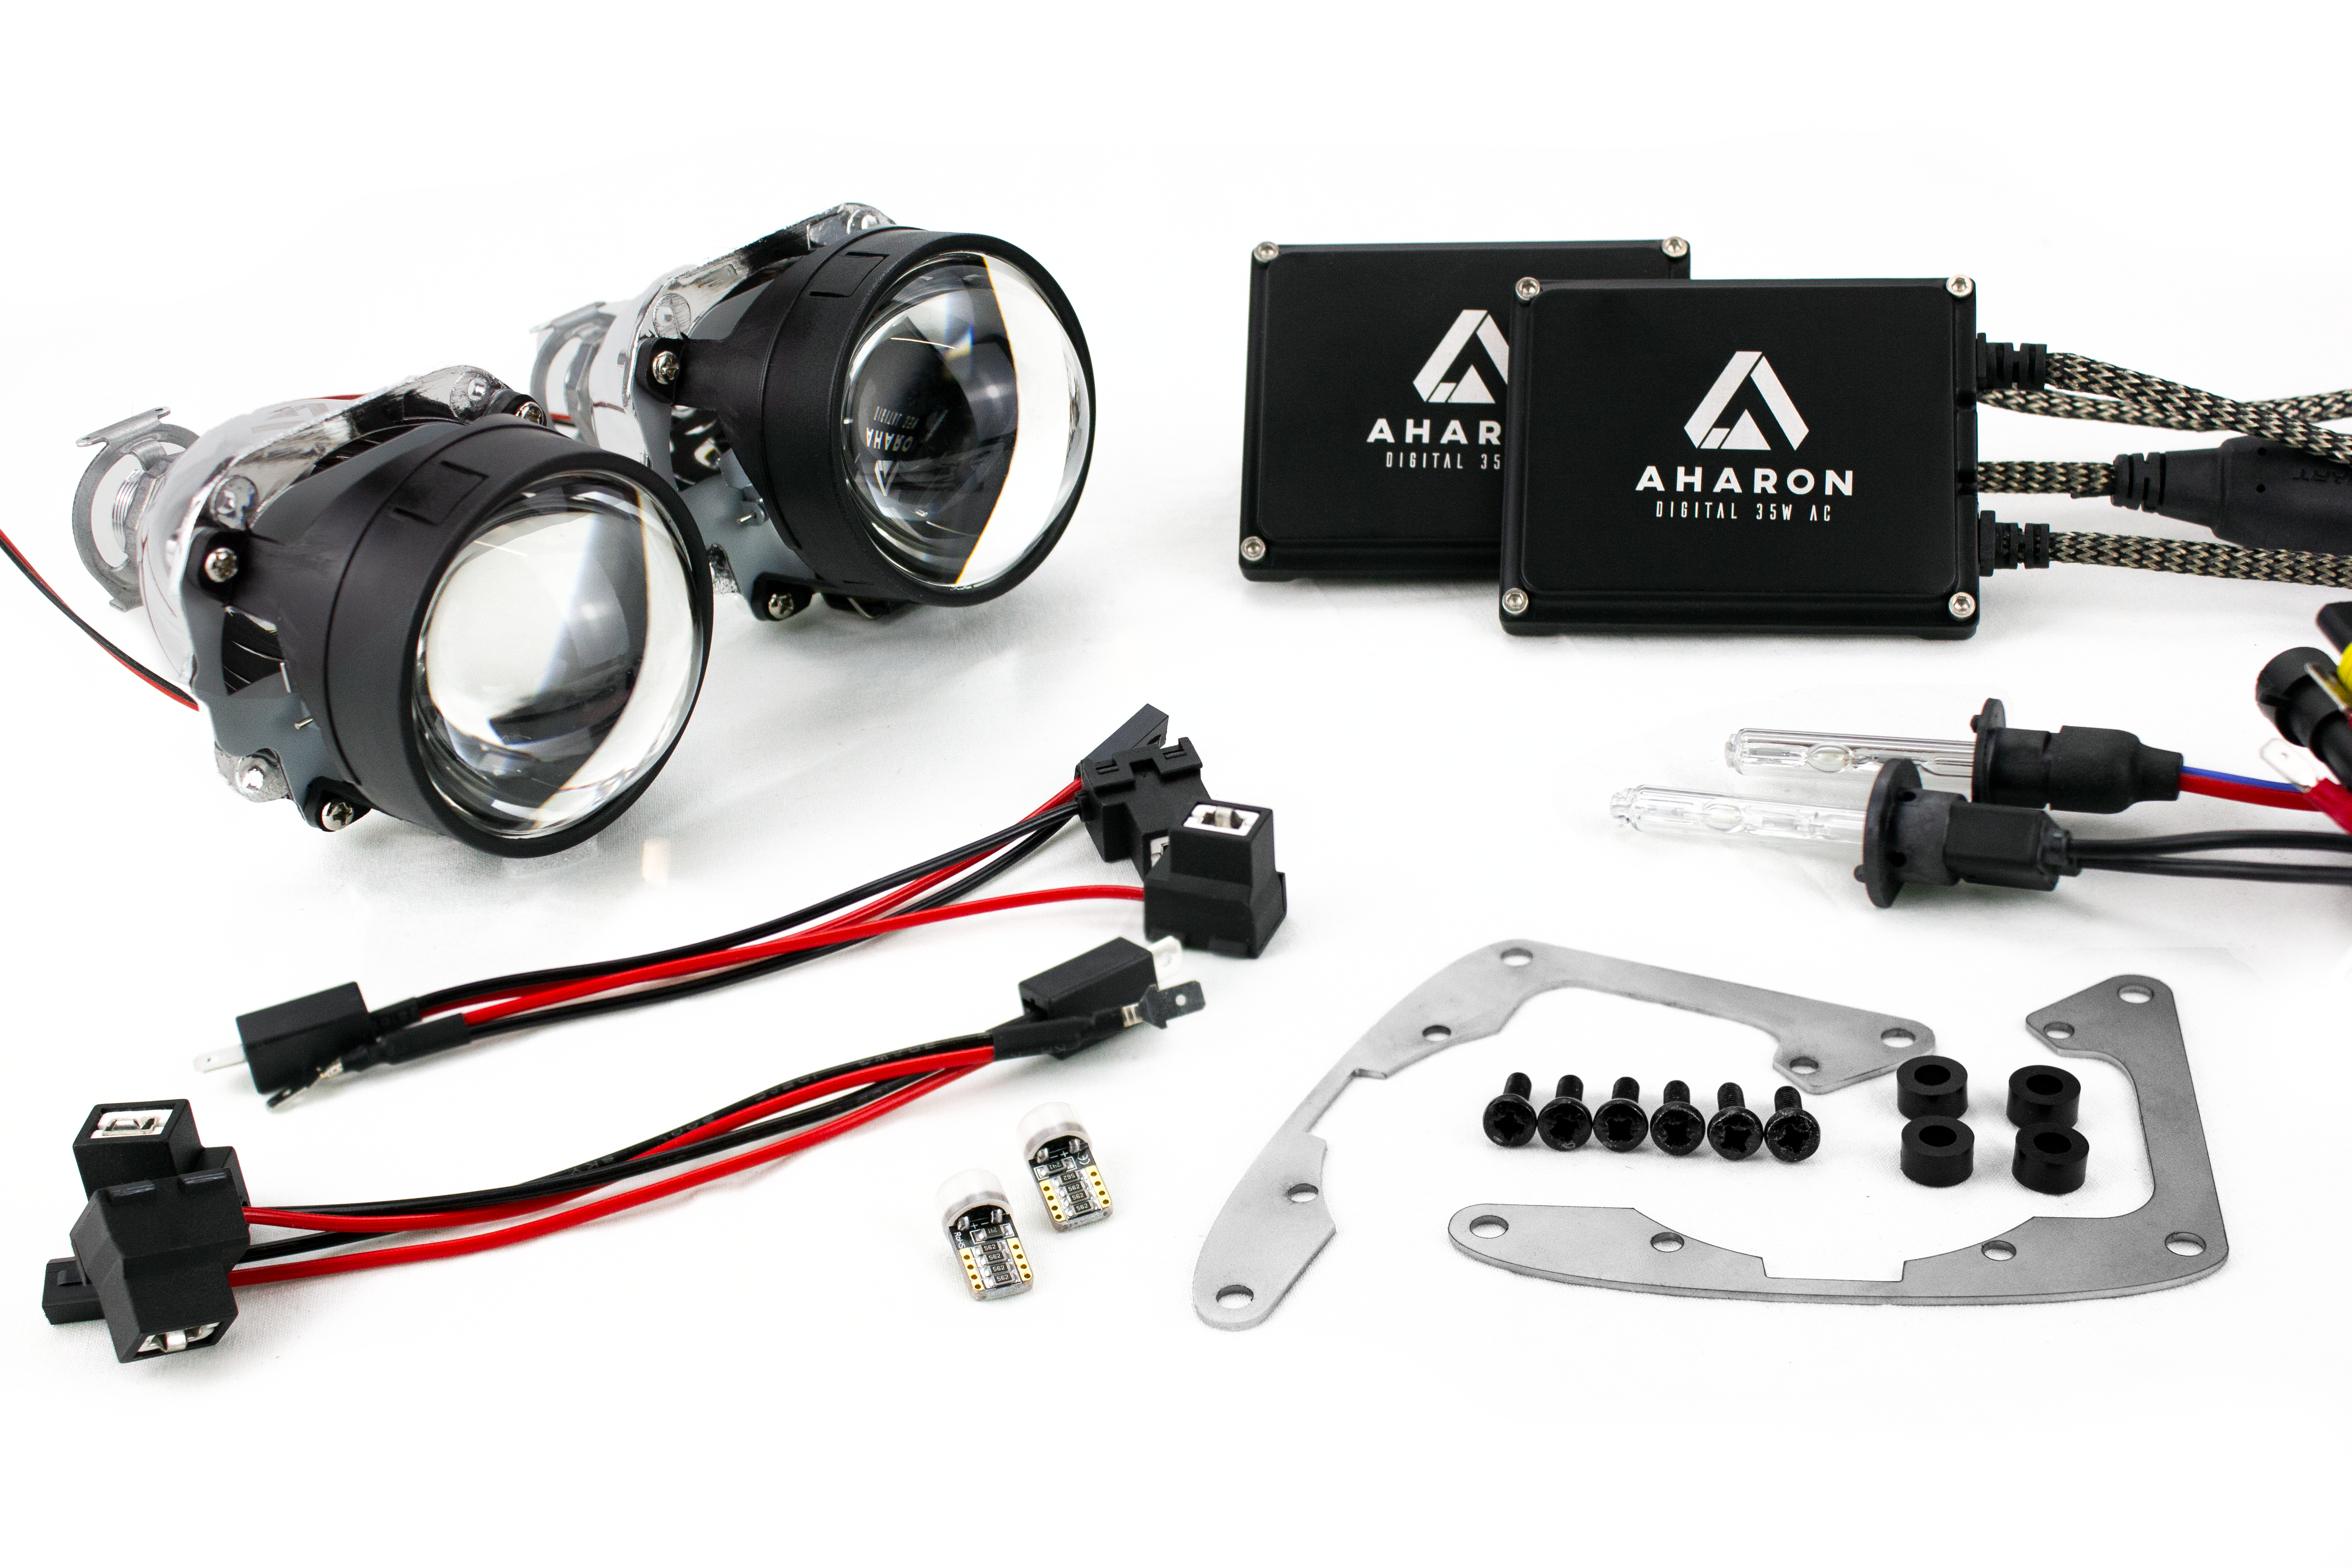 Kit de mise à niveau des phares bi-xénon Audi Ur-S4 91-94 pour phares de projecteur halogène